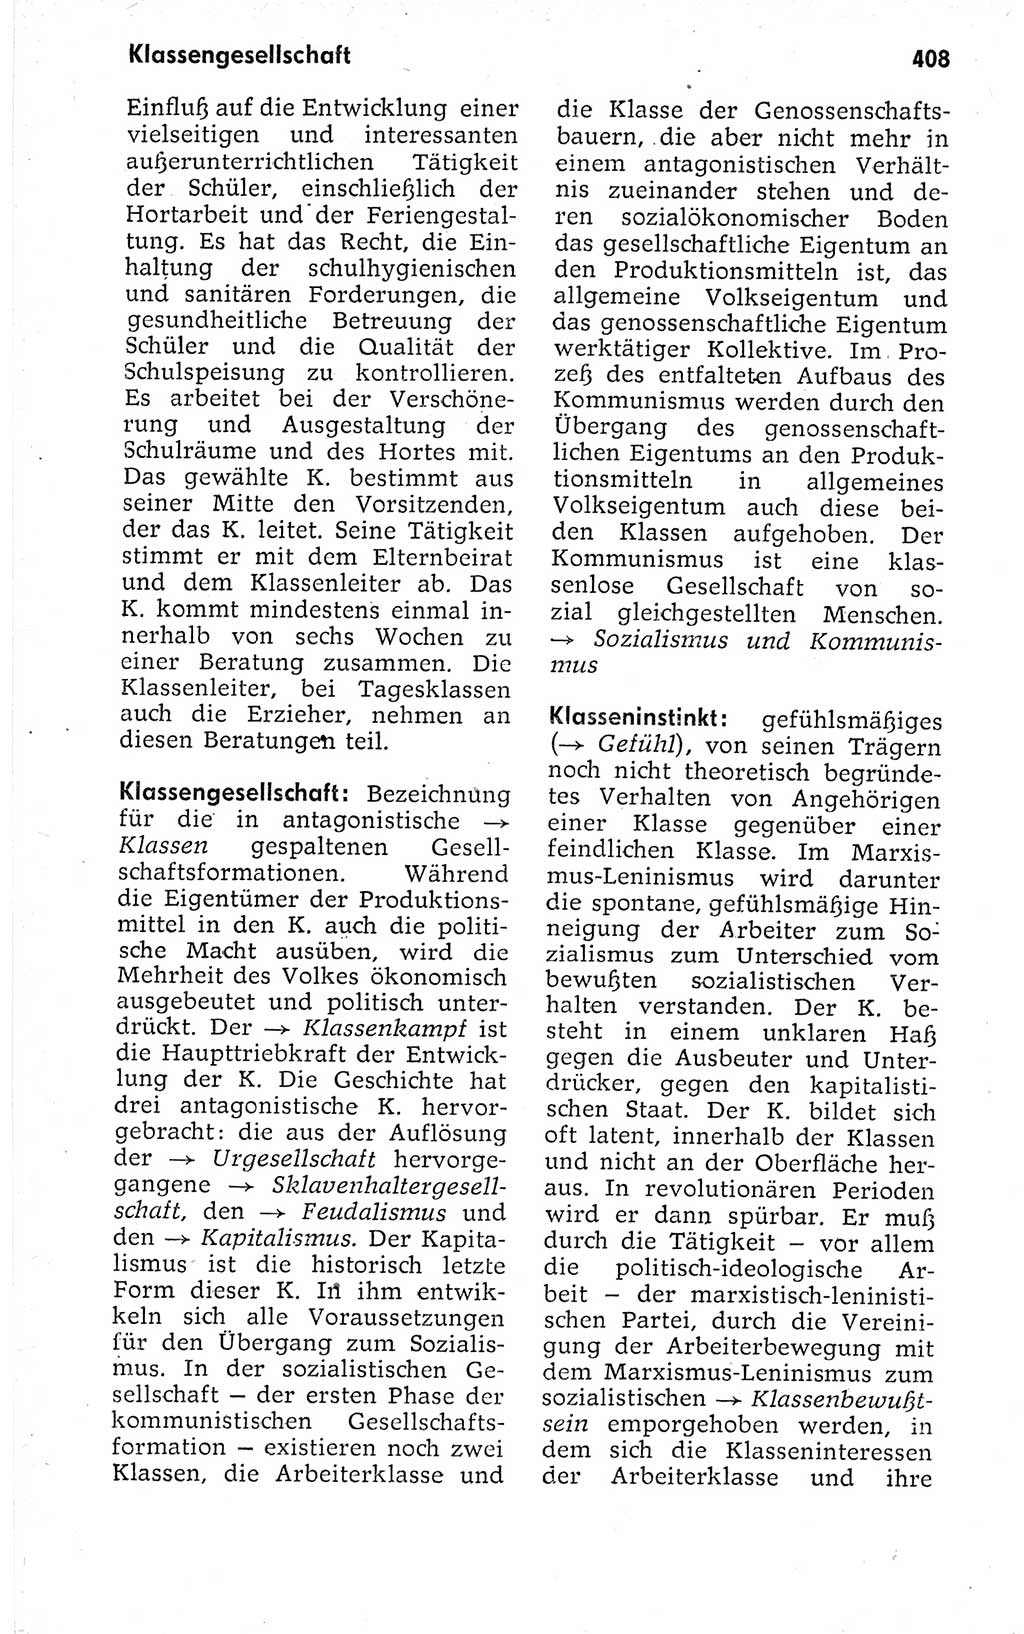 Kleines politisches Wörterbuch [Deutsche Demokratische Republik (DDR)] 1973, Seite 408 (Kl. pol. Wb. DDR 1973, S. 408)